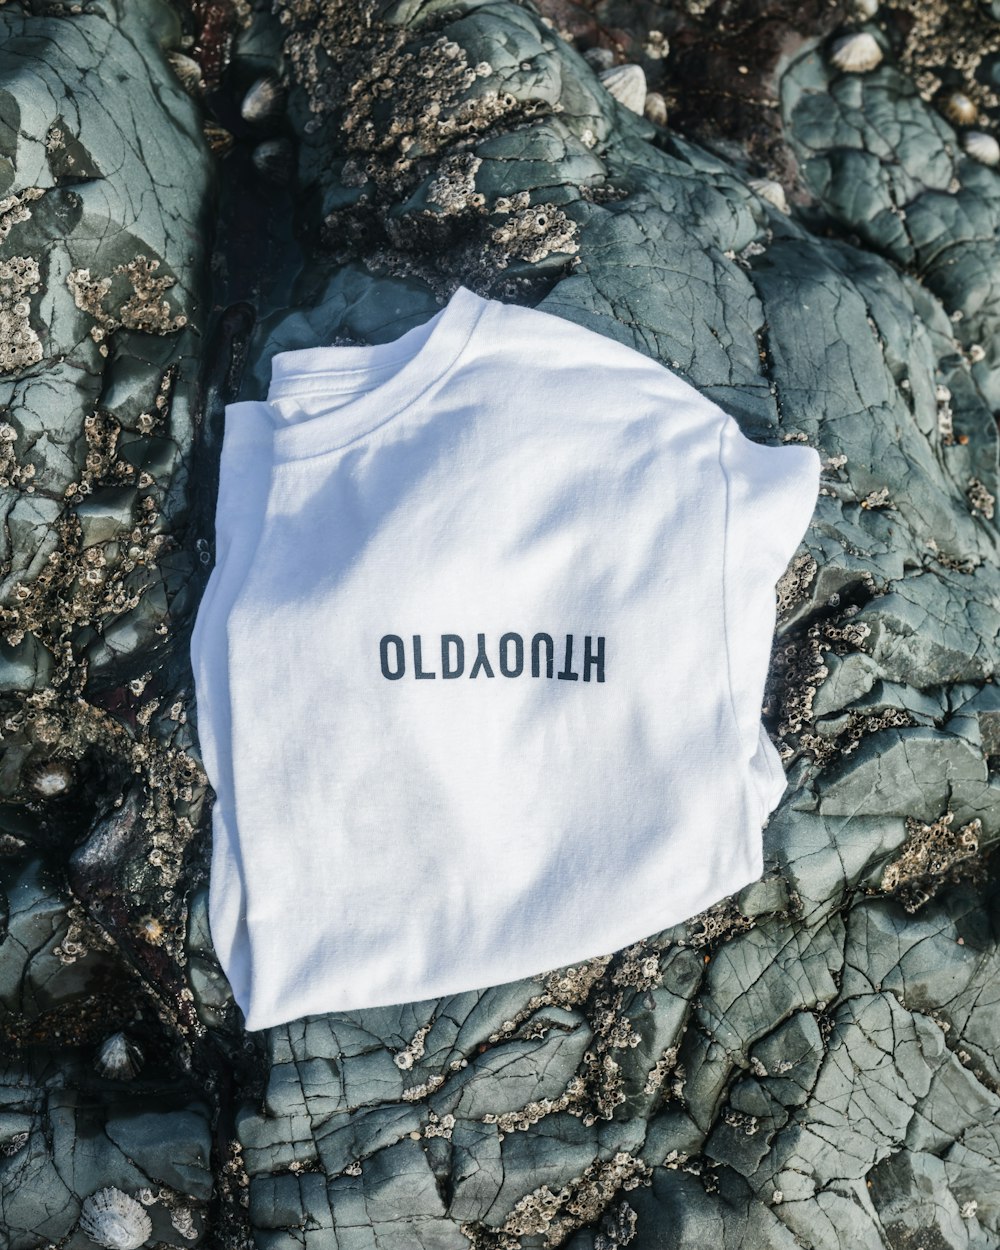 Una camiseta blanca con la palabra Olladoahl impresa en ella